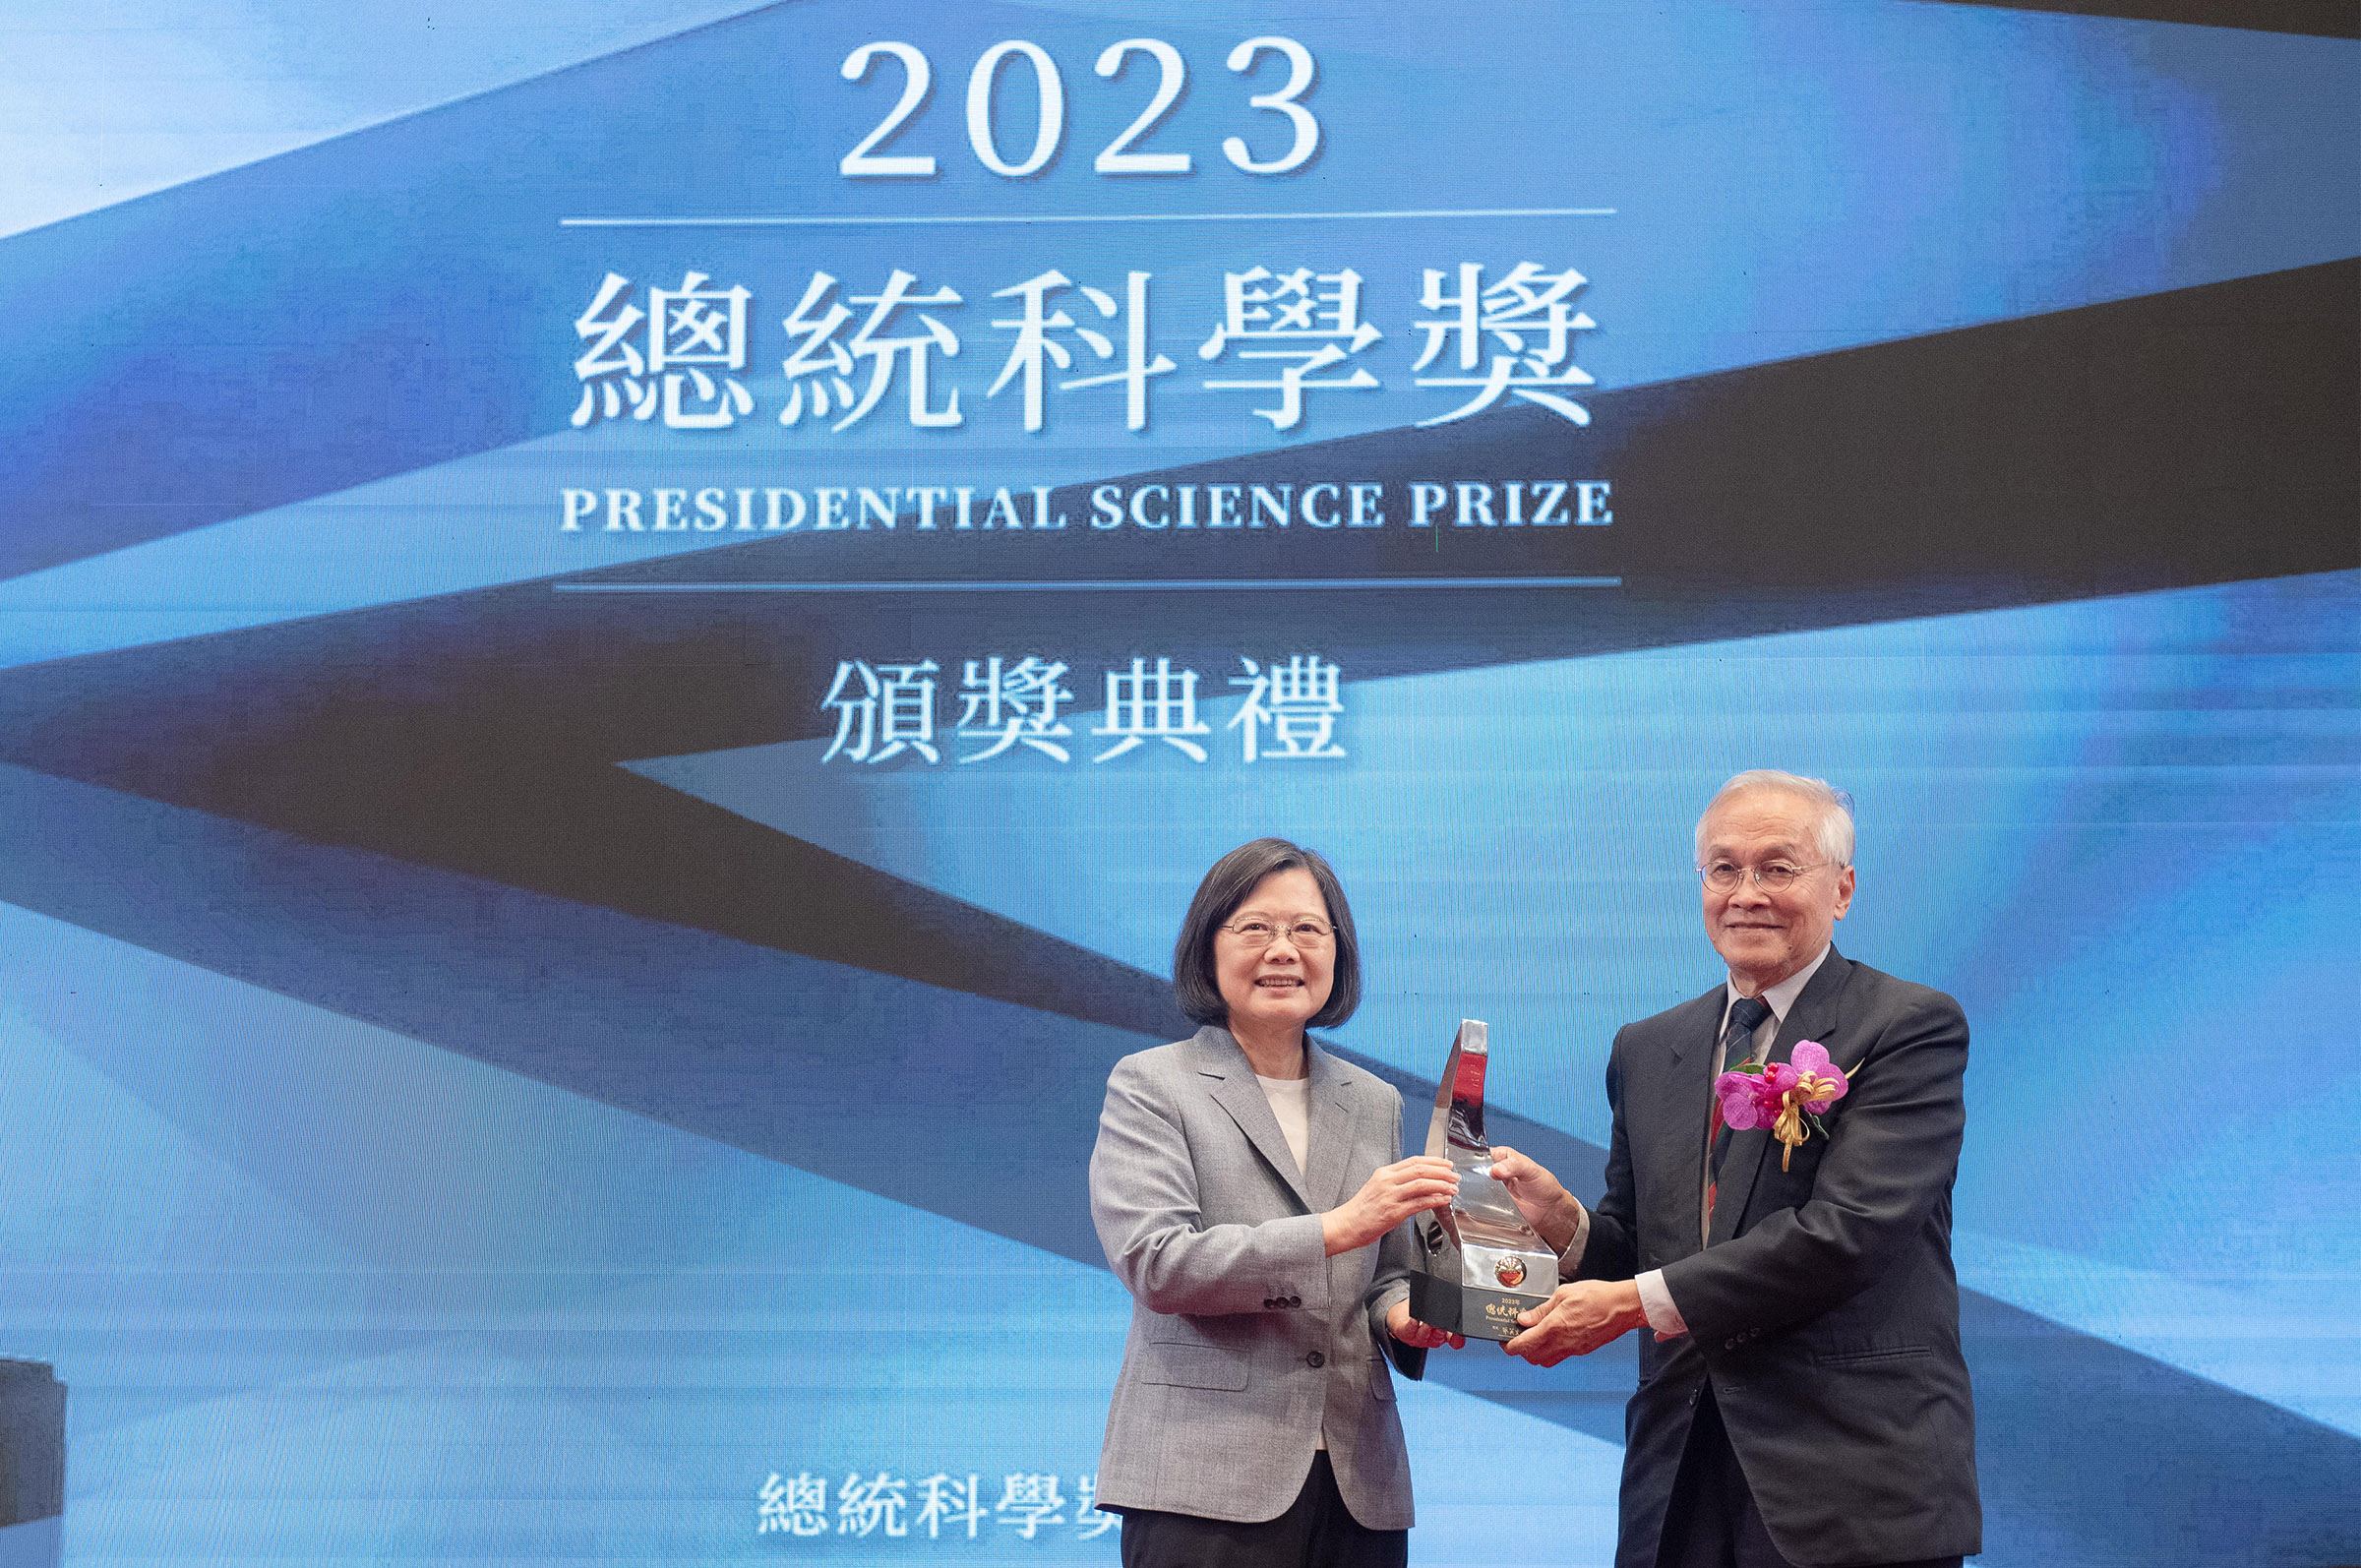 總統頒發2023年總統科學獎予獲獎人葉永烜院士。照片國科會提供